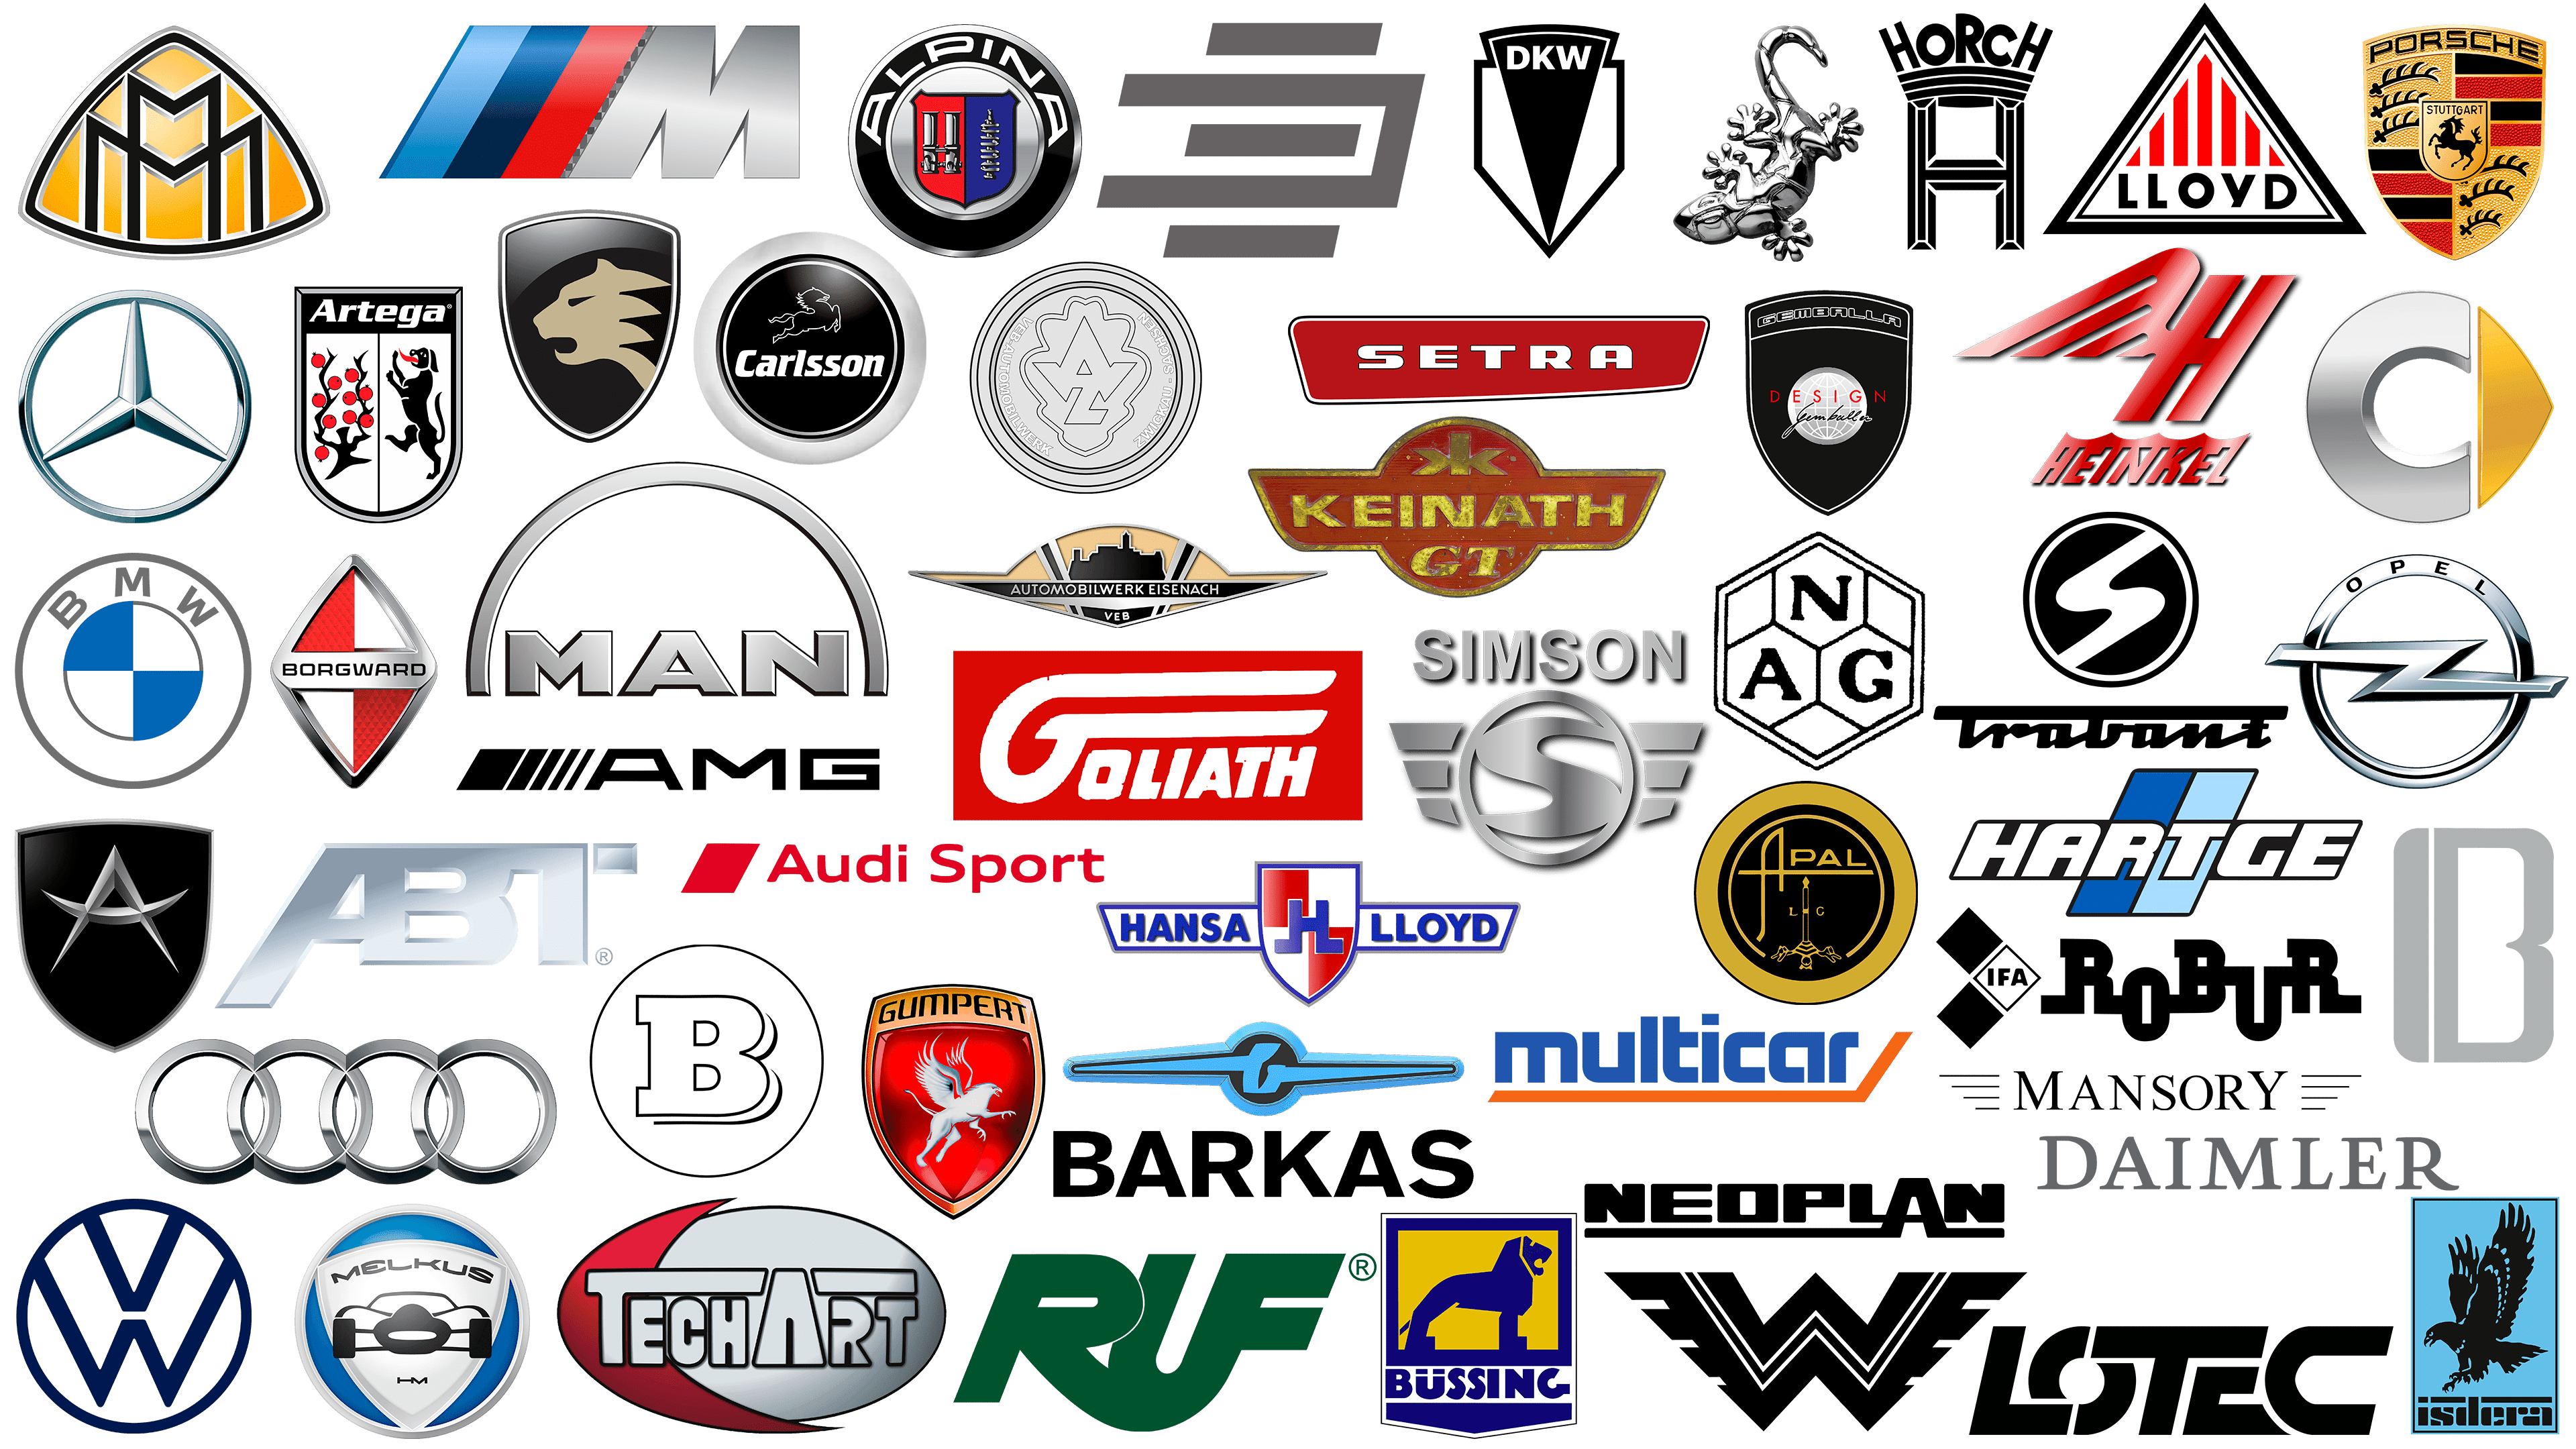 German Car Brands and car logos, companies